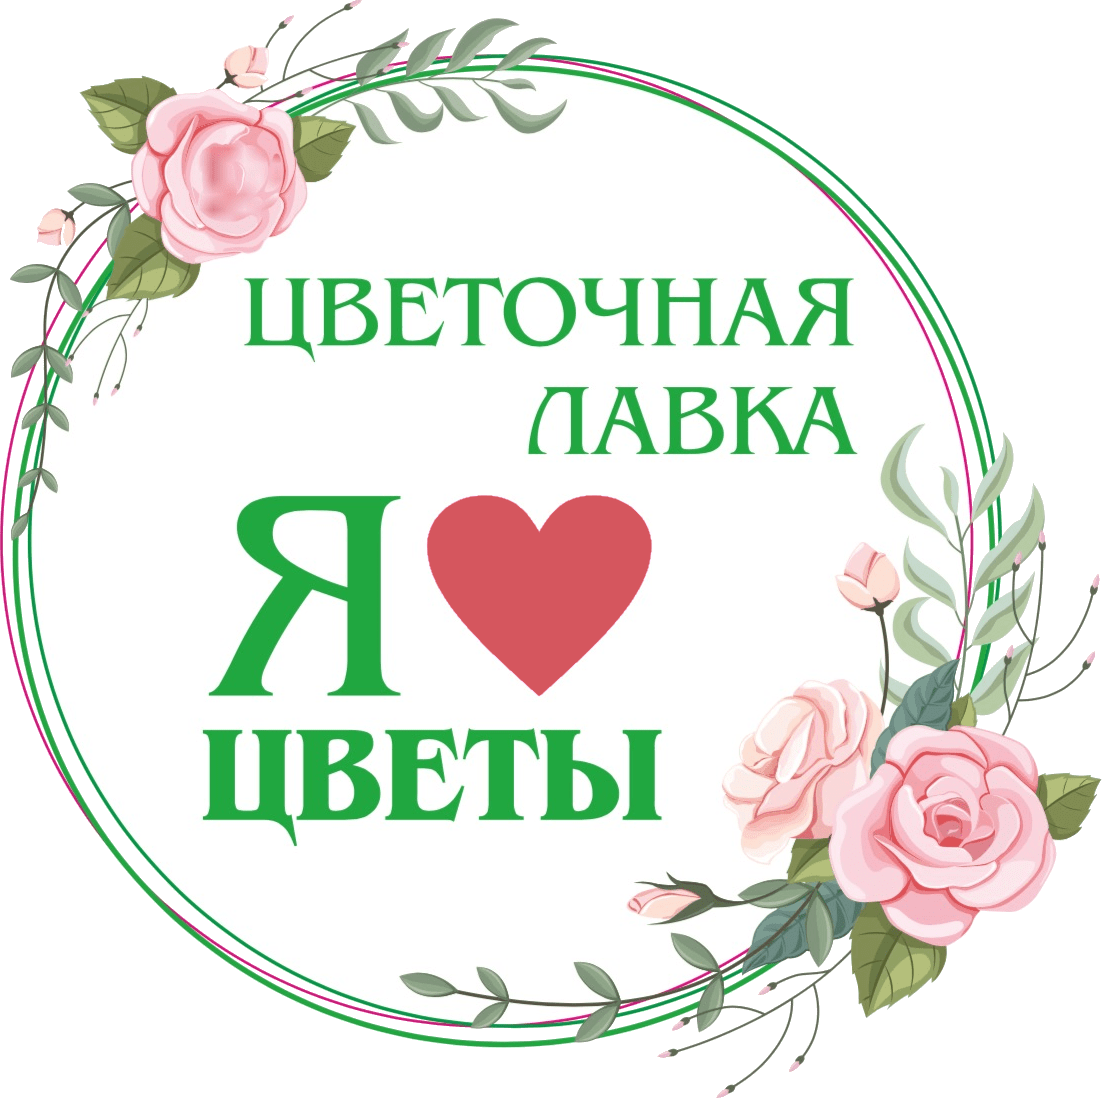 «Цветочная лавка» - интернет-магазин цветов в Троицке